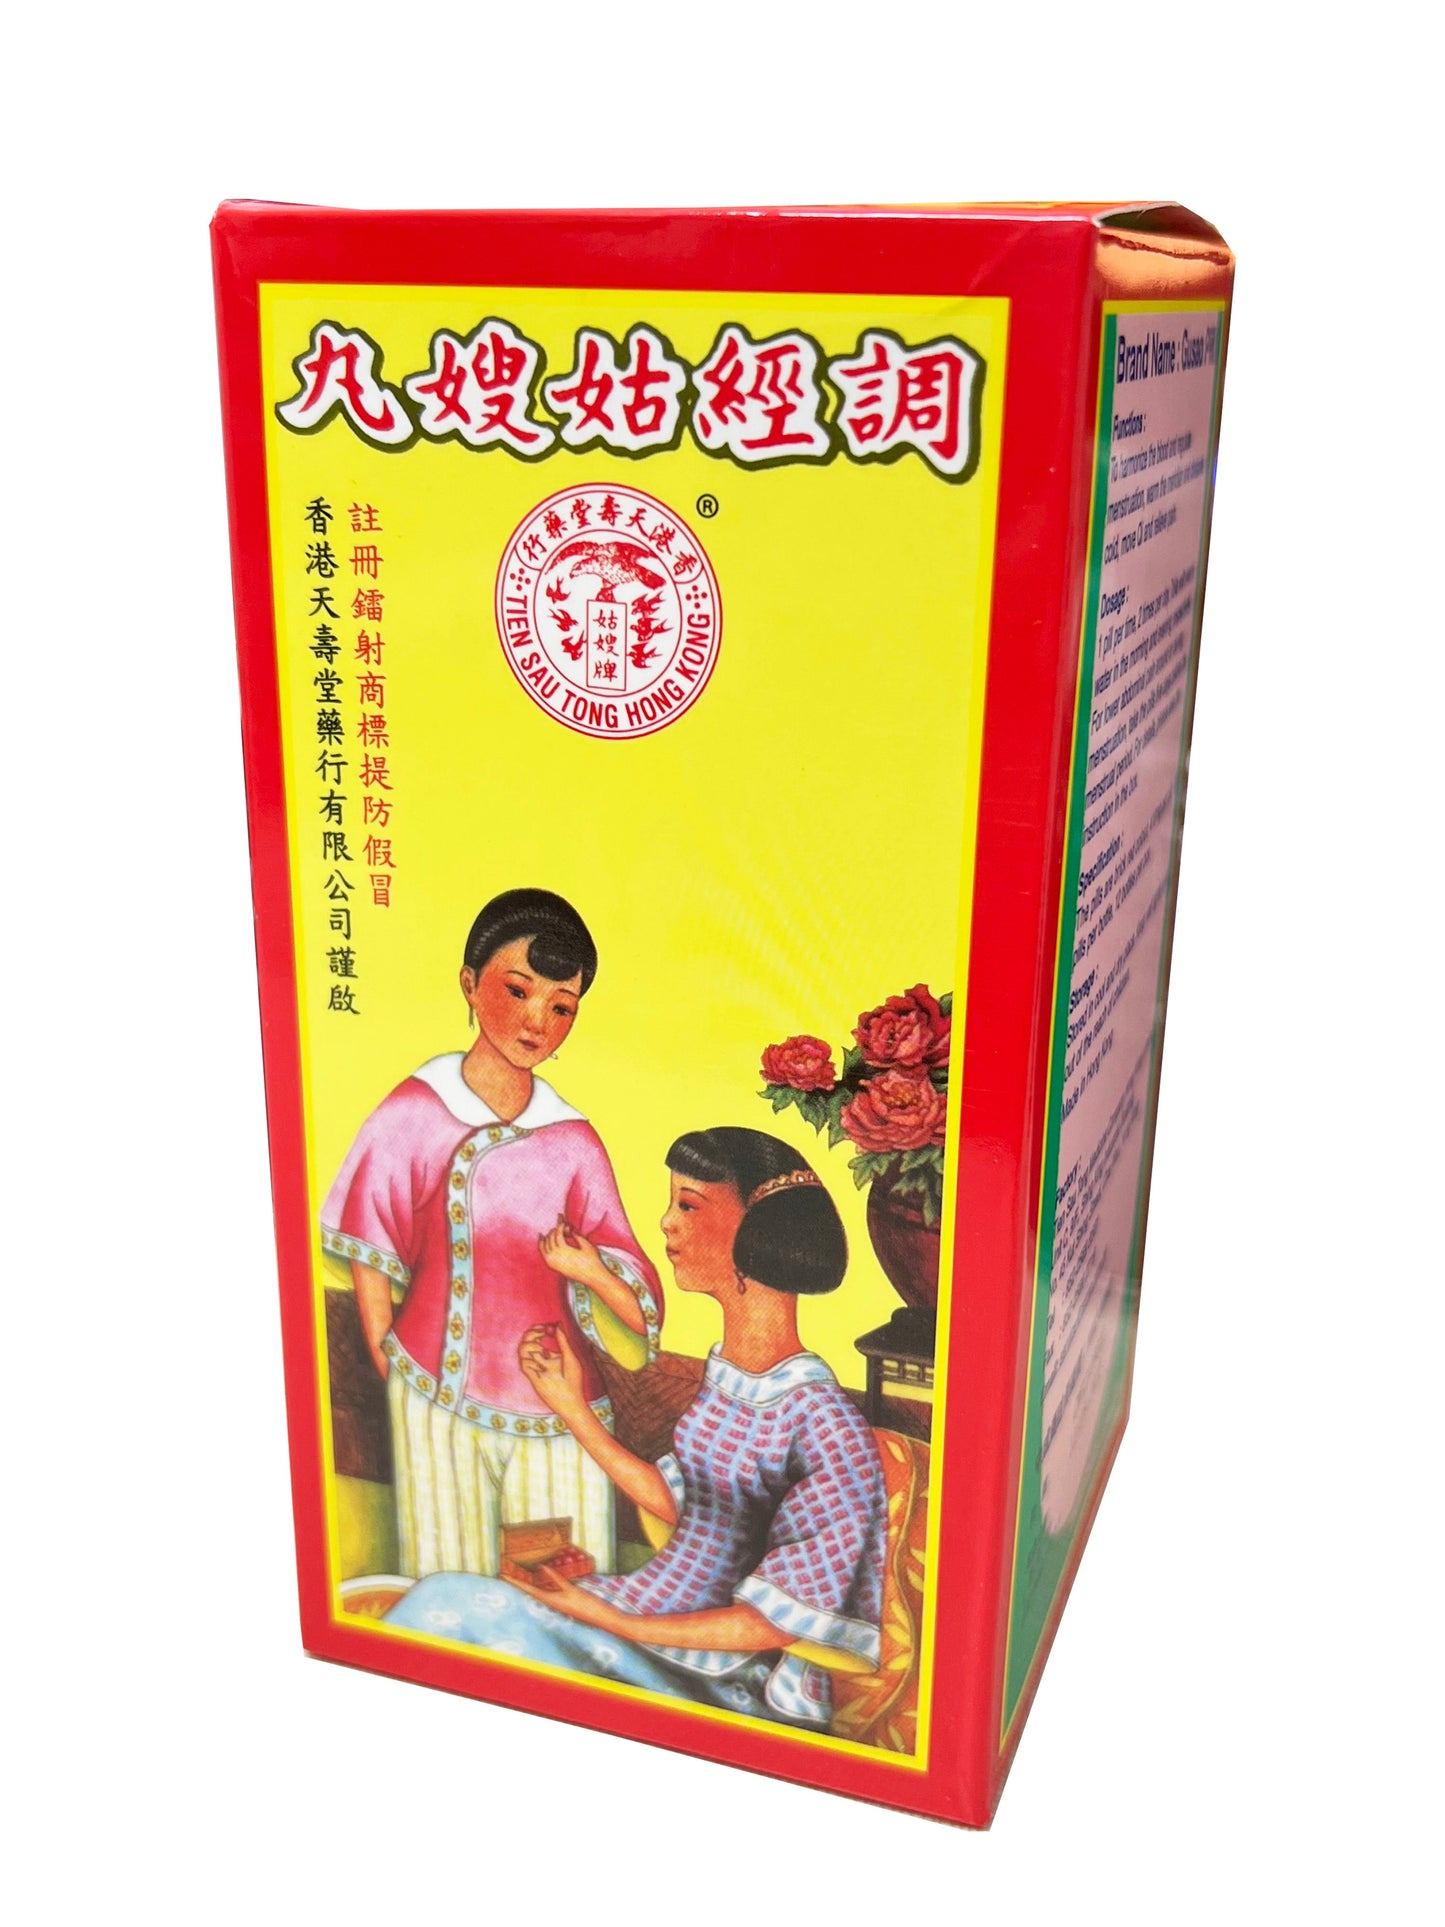 Tien Sau Tong Hong Kong Gusao Pill